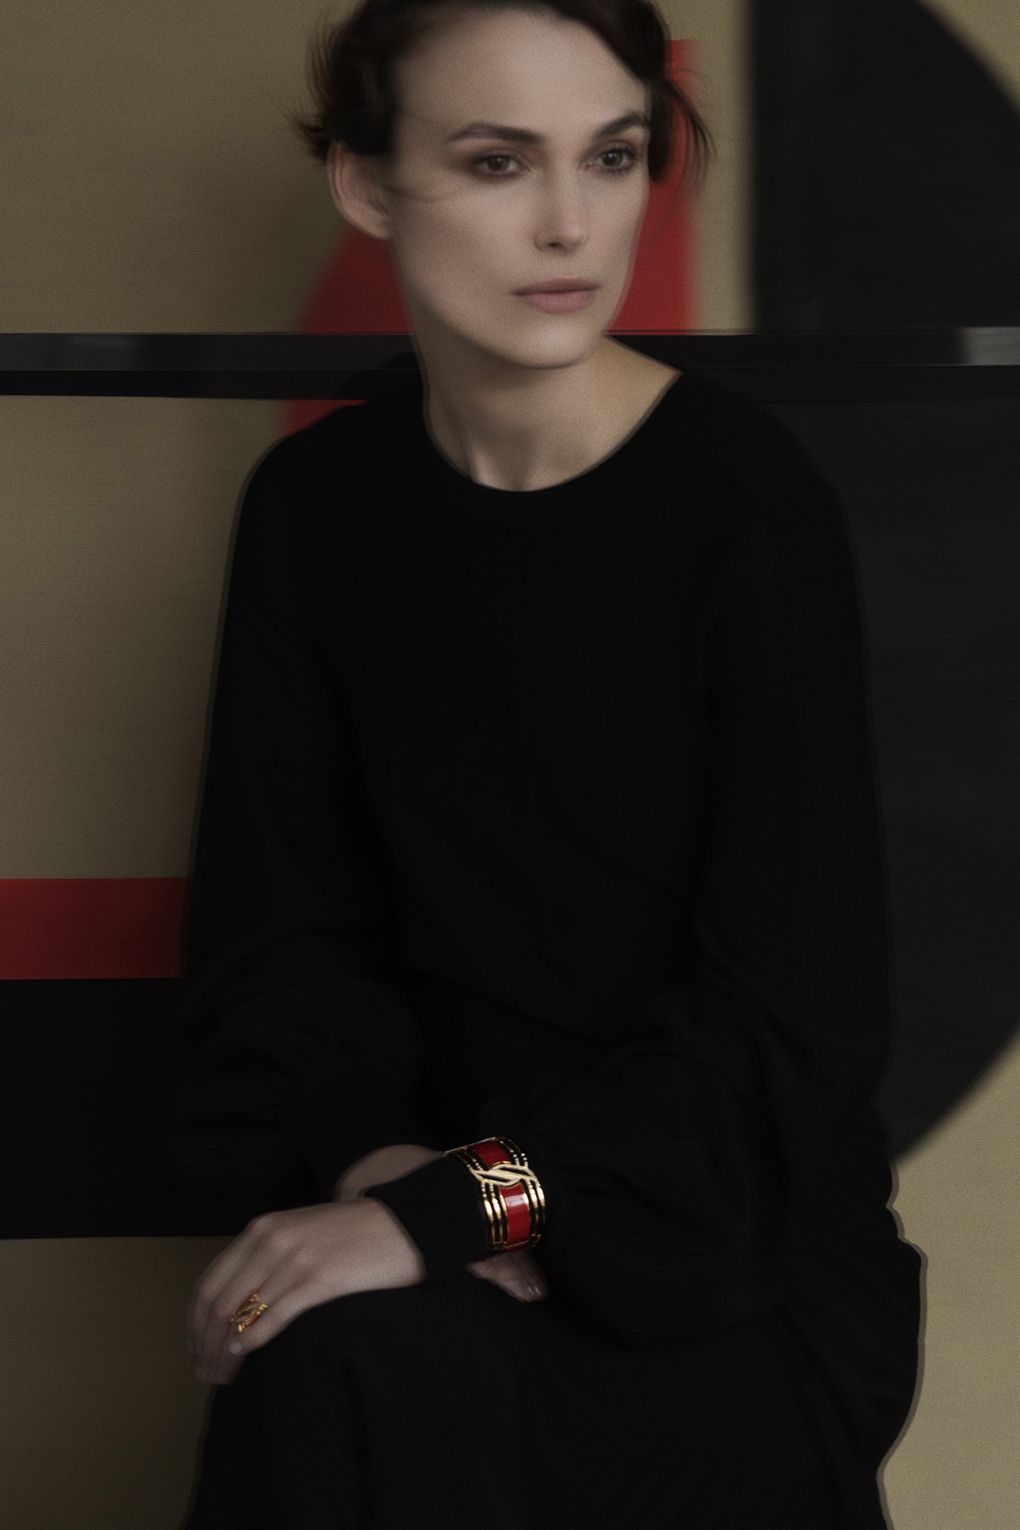 Сара Мун фотографирует Киру Найтли для новой коллекции ювелирных изделий Chanel